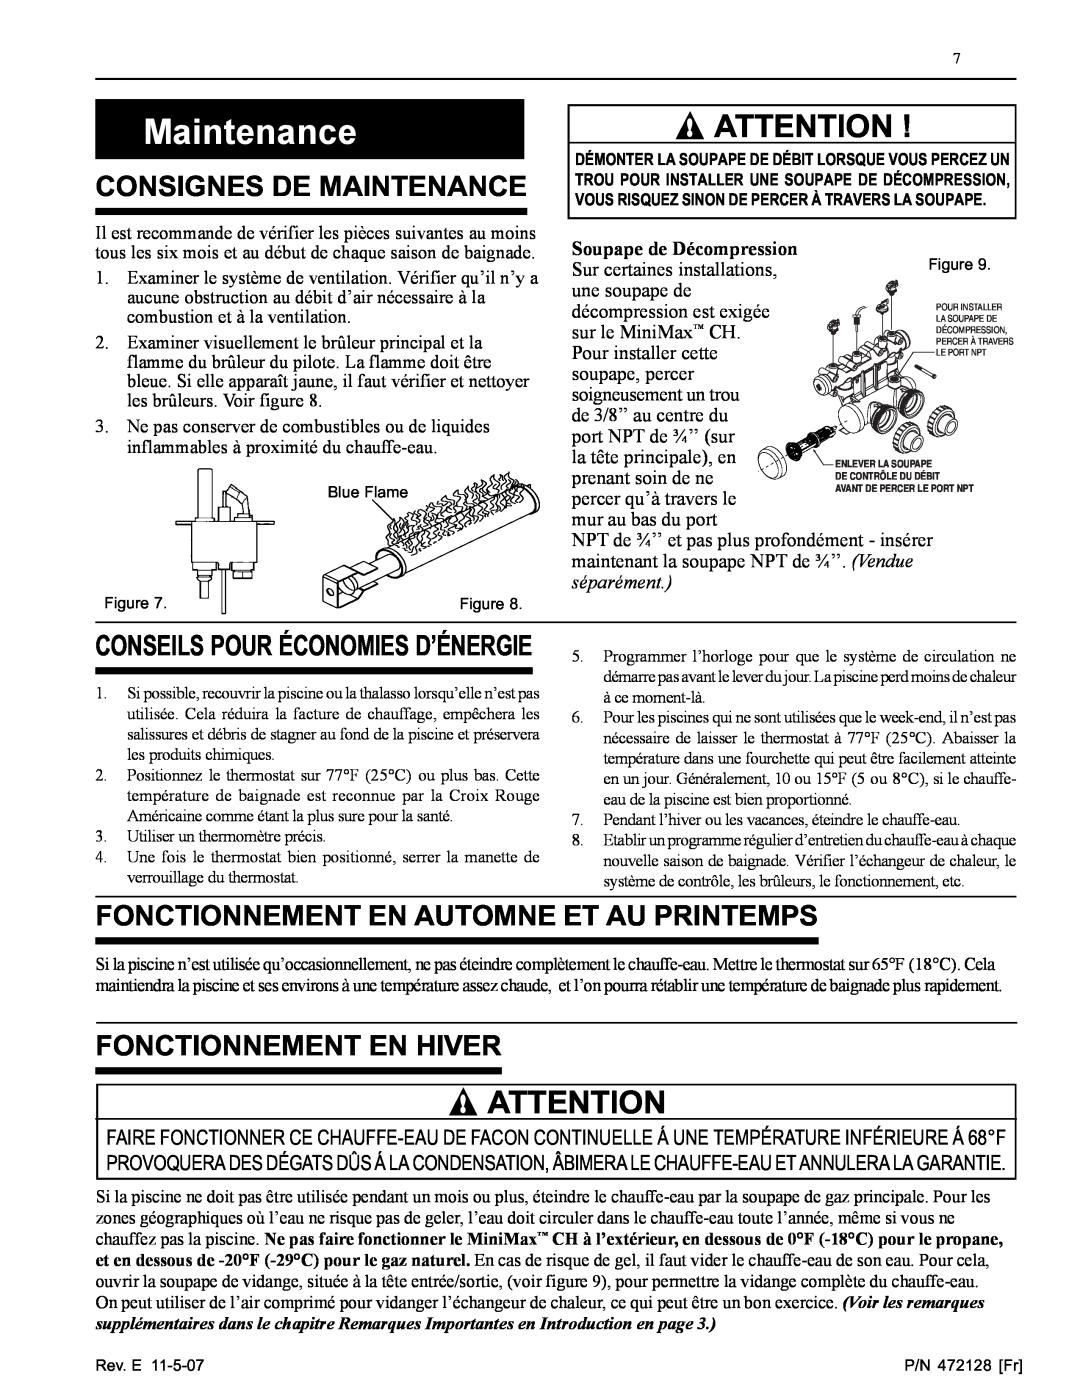 Pentair Hot Tub manual Consignes De Maintenance, Fonctionnement En Automne Et Au Printemps, Fonctionnement En Hiver 